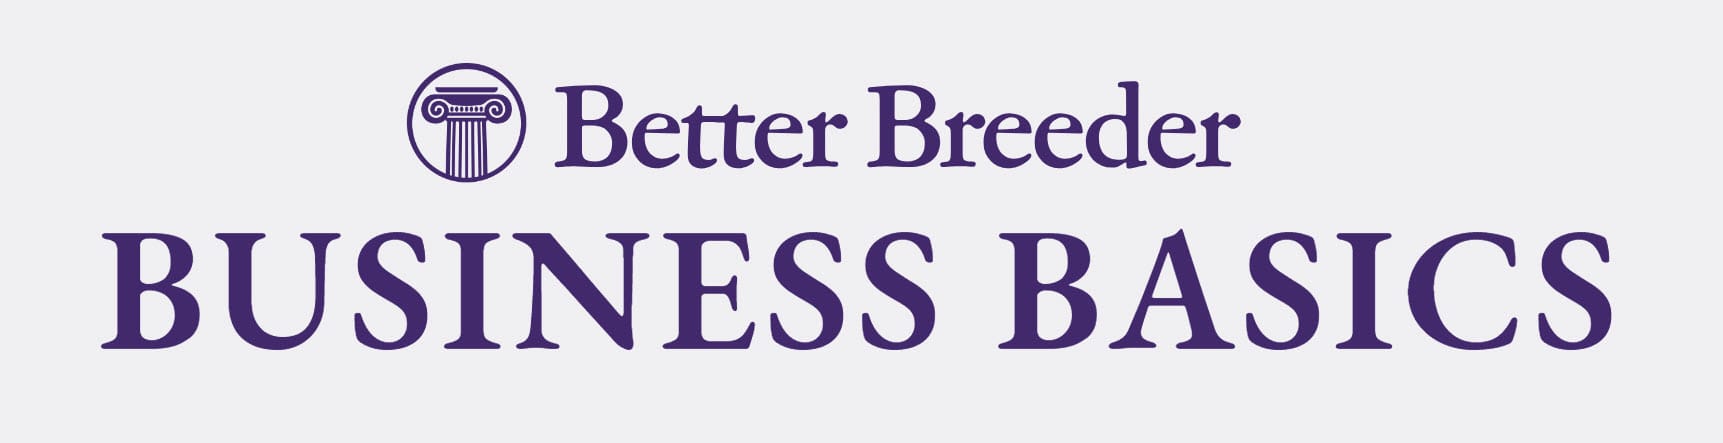 Better Breeder Business Basics logo